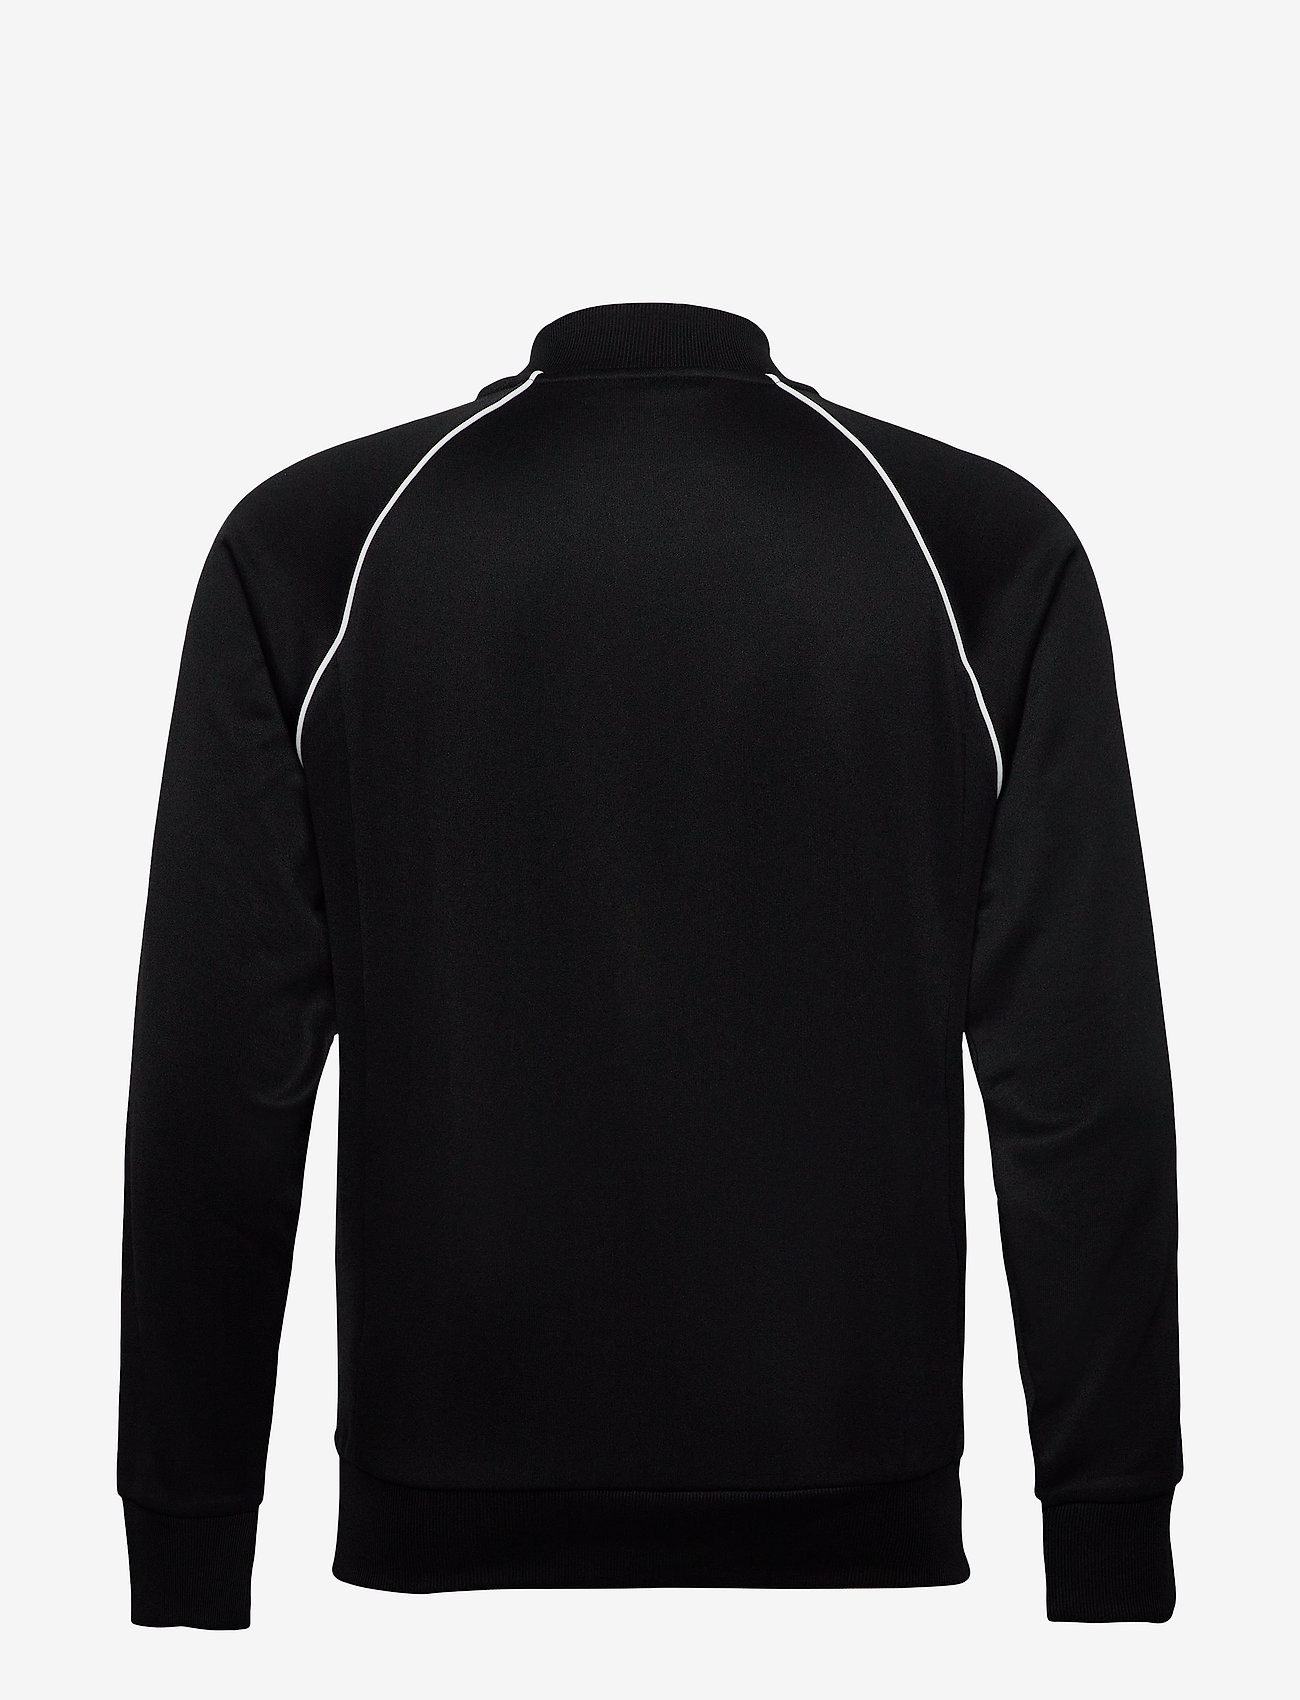 adidas Originals - SST Track Top - truien en hoodies - black/white - 1